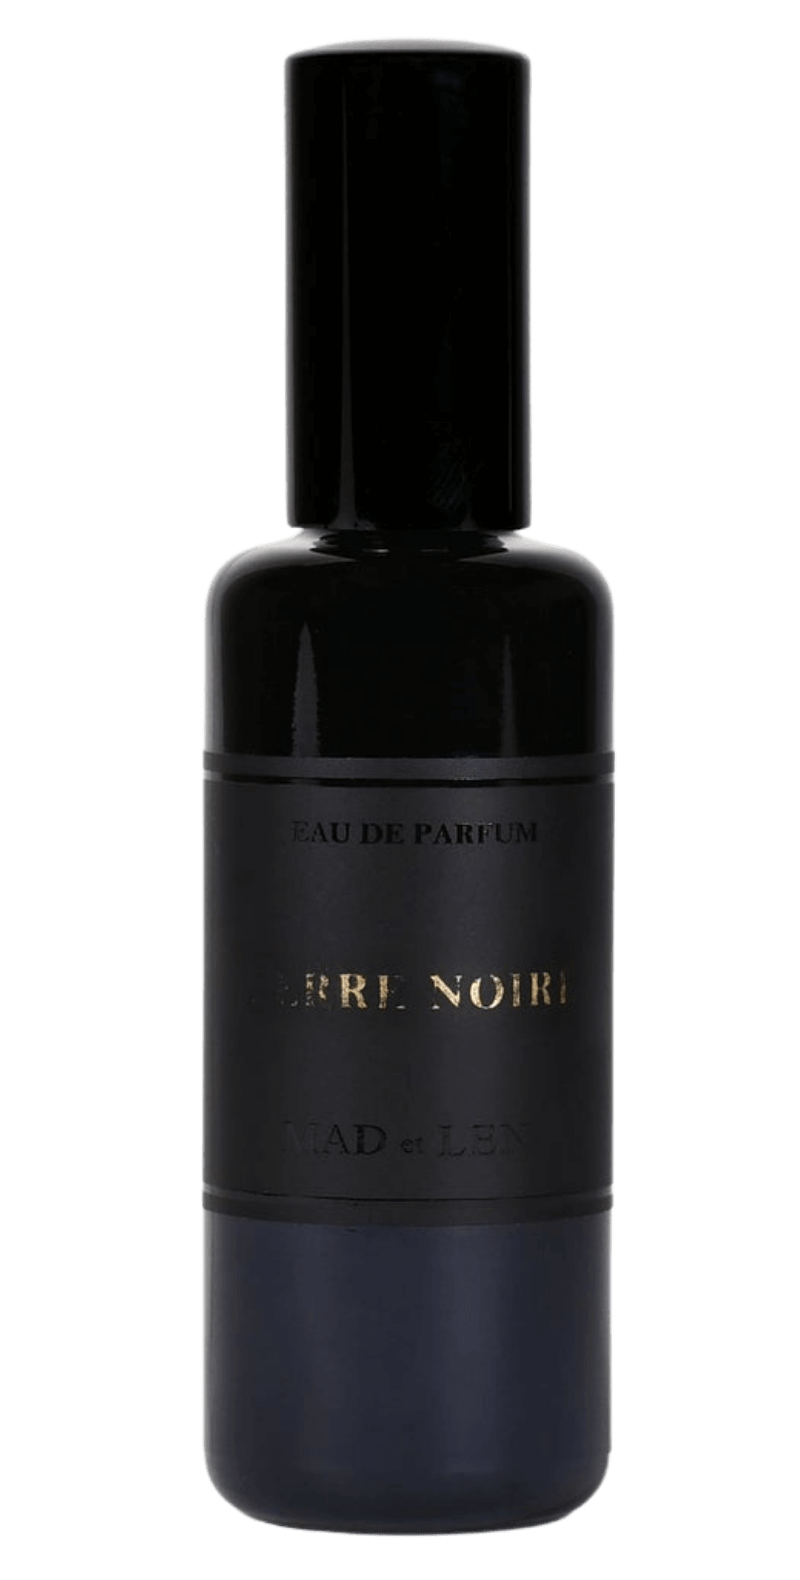 &#39;s Mad et Len Terre Noire Eau de Parfum - Bellini&#39;s Skin and Parfumerie 